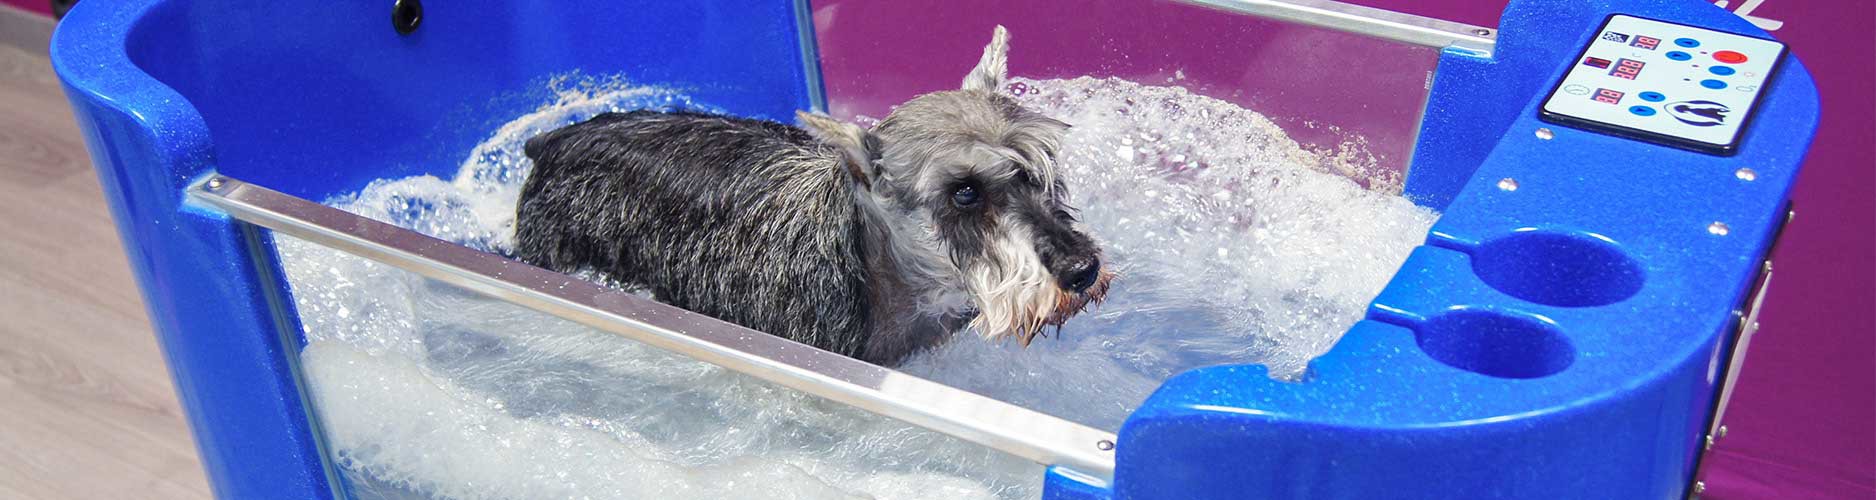 Ozonoterapia y spa para perros